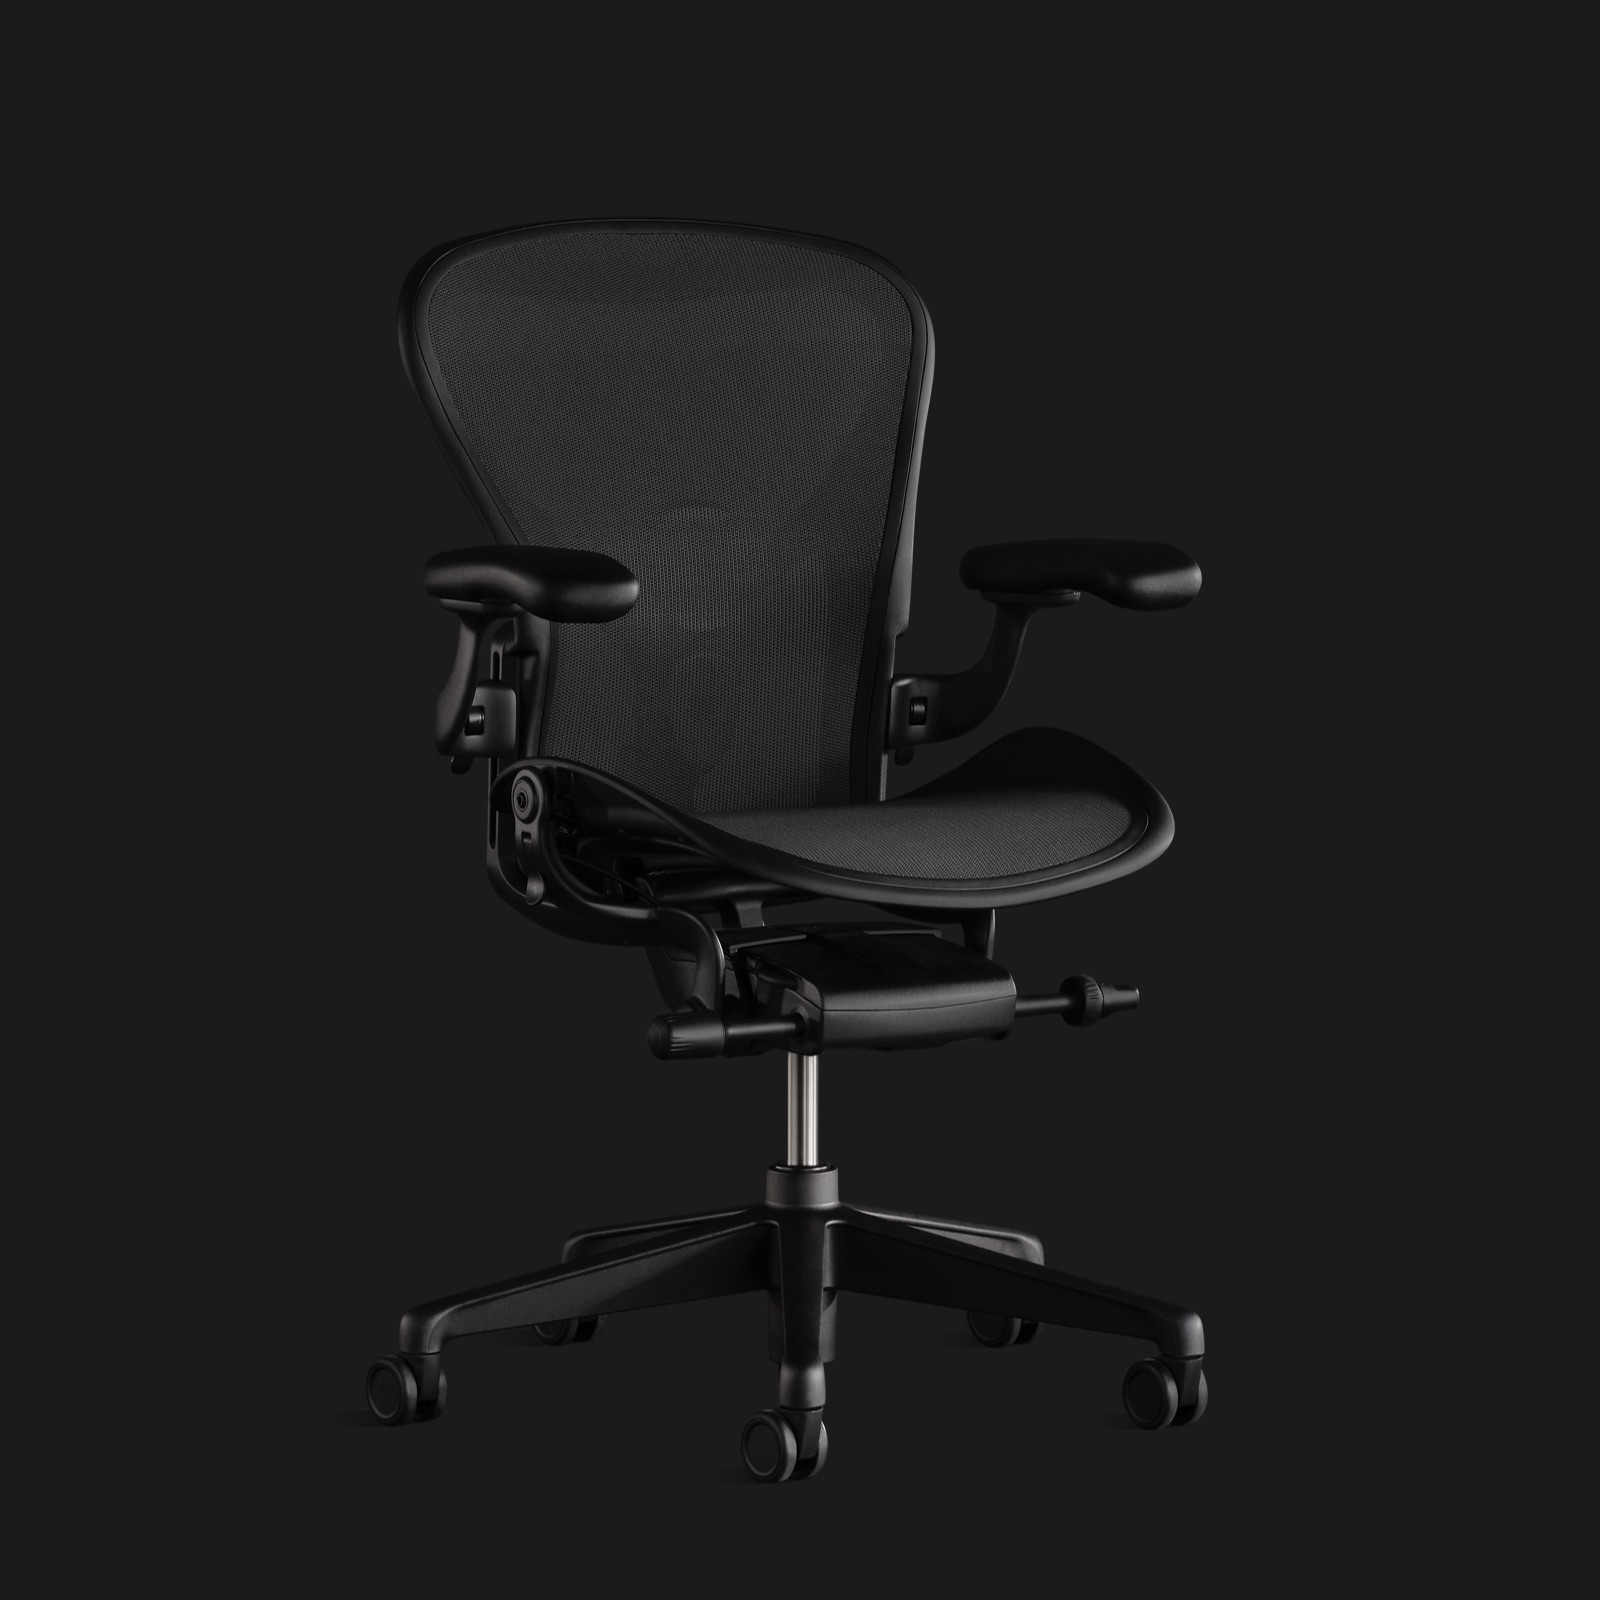 Uma cadeira Aeron toda preta contra um fundo preto, mostrada de frente em um leve ângulo.